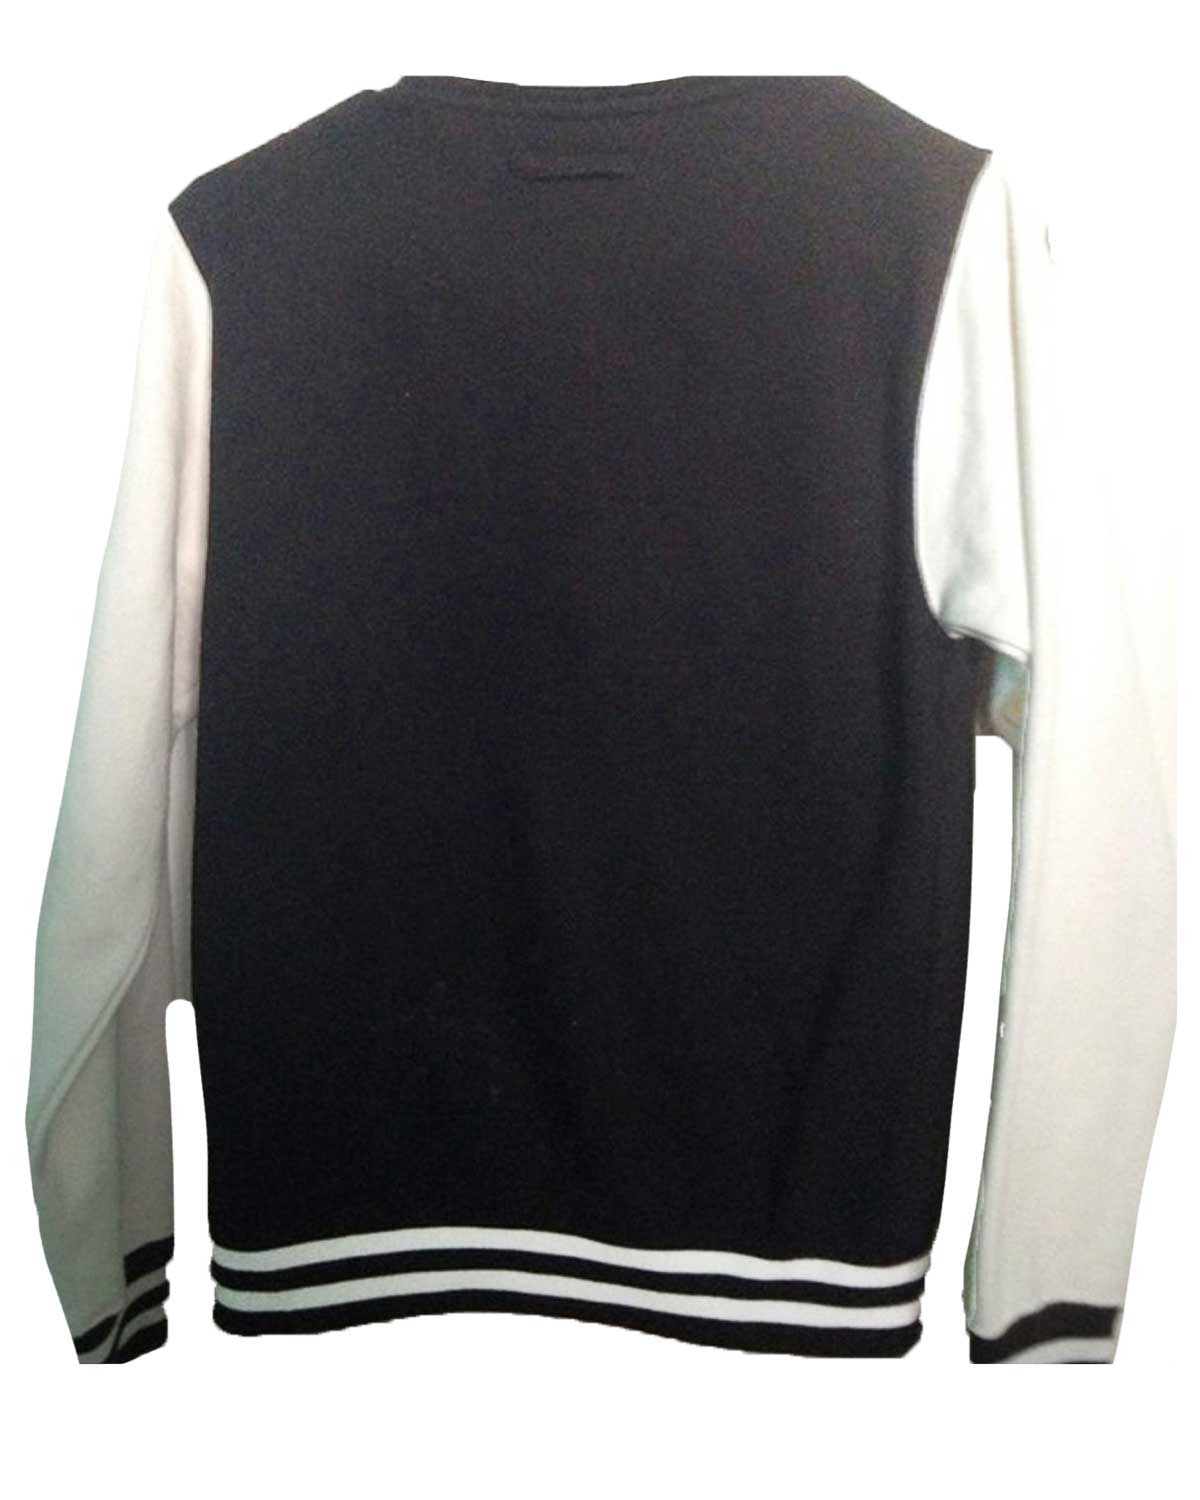 1D One Direction Black And White Varsity Jacket | Elite Jacket